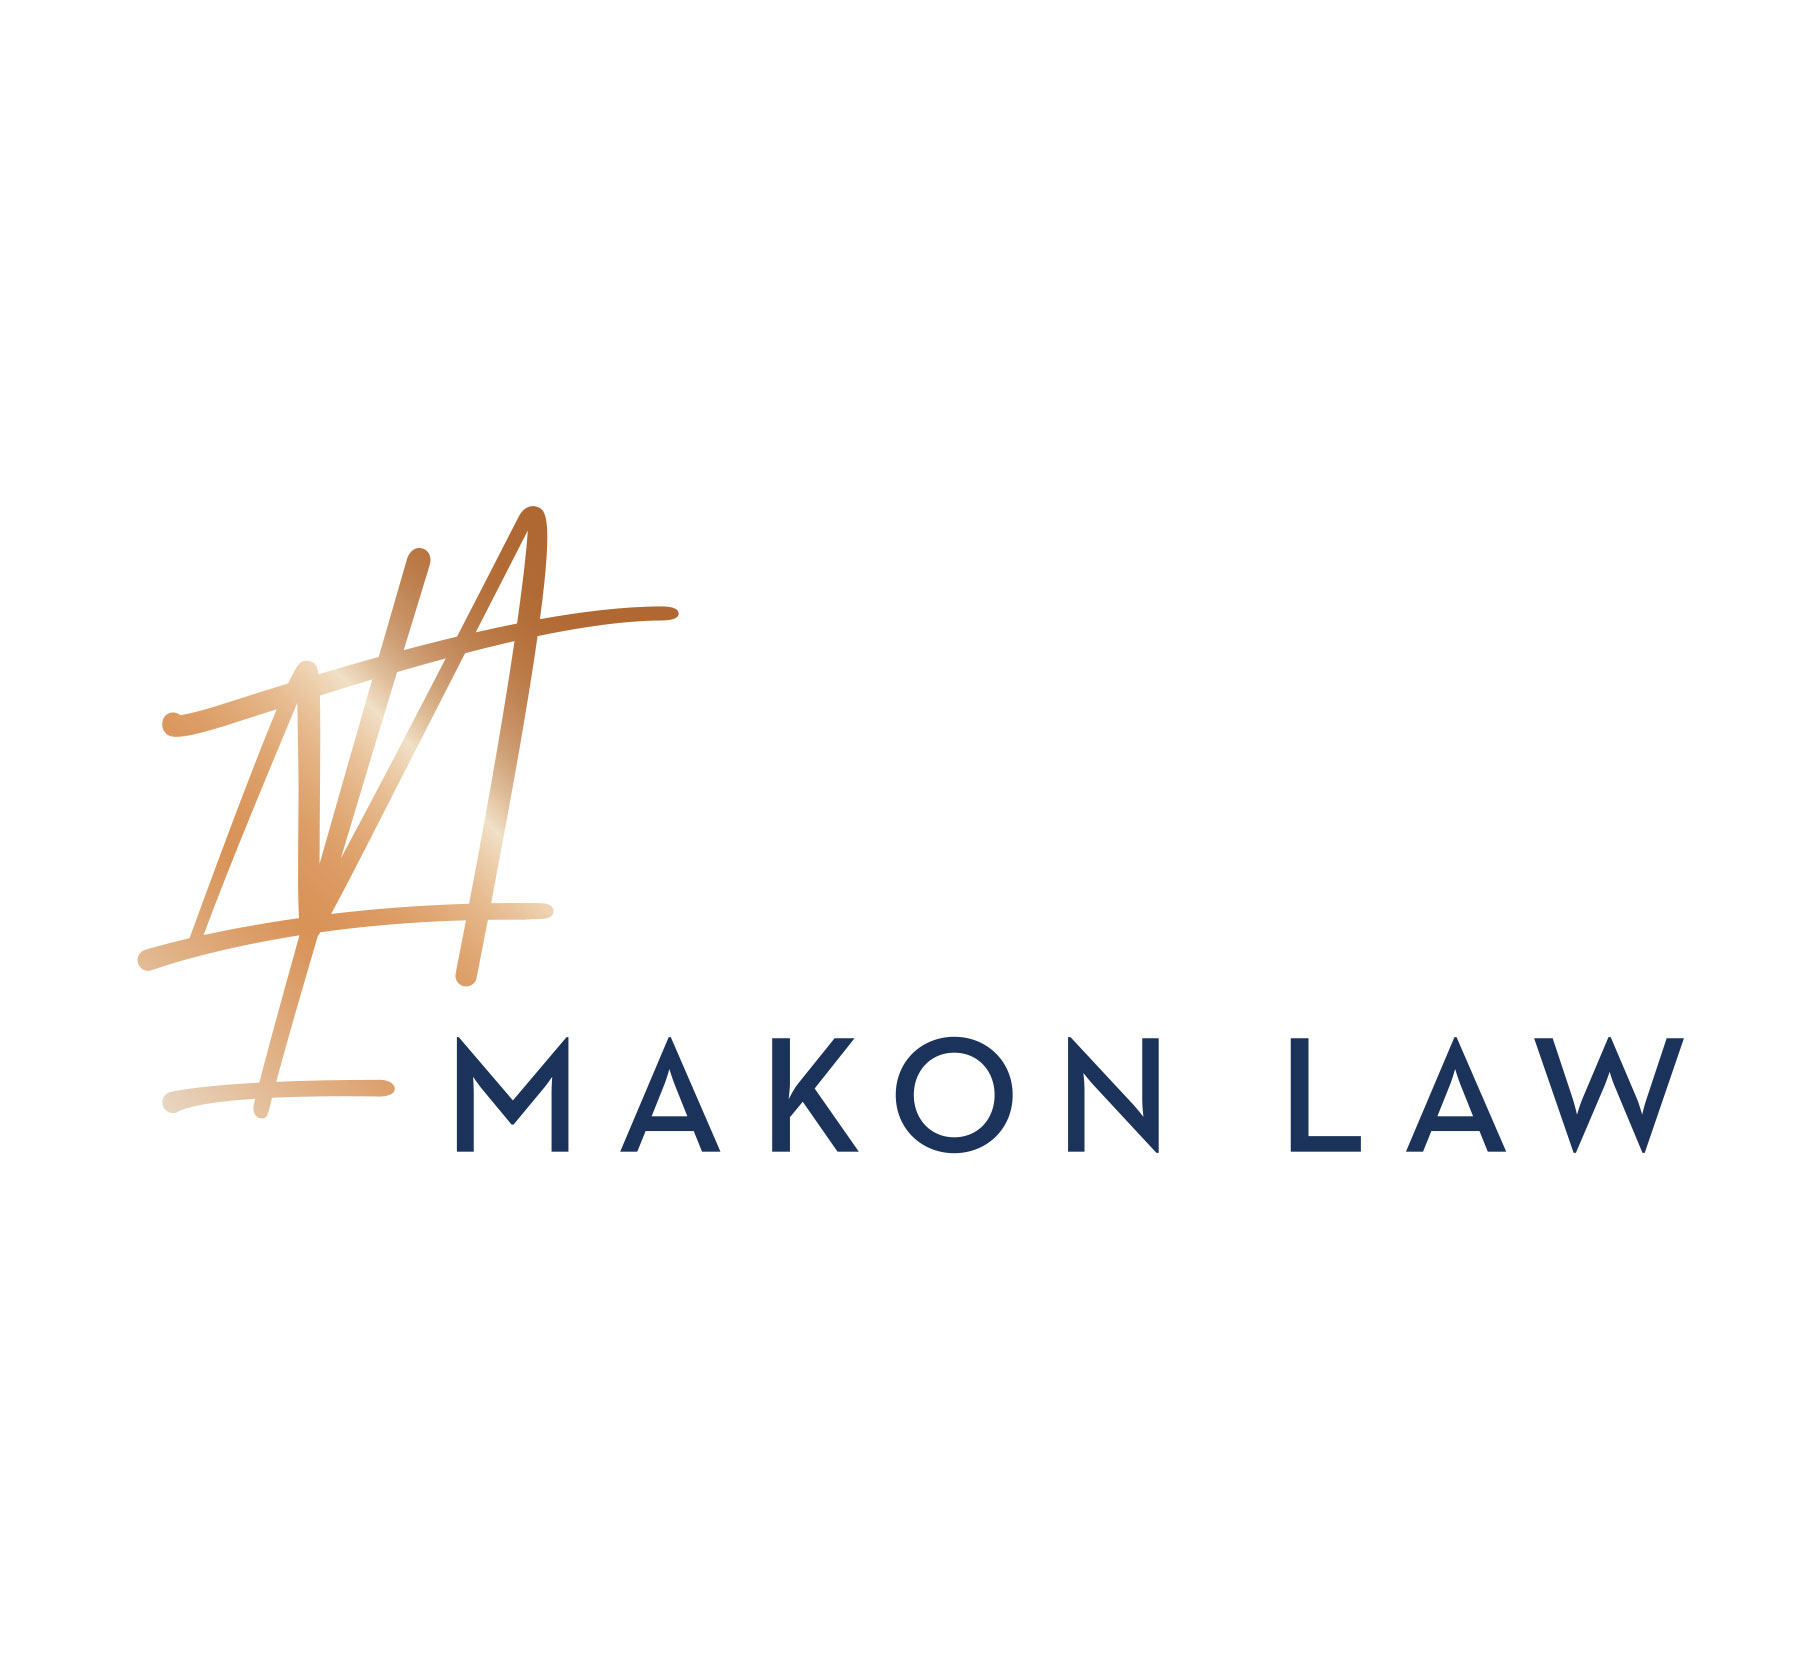 Makon Law